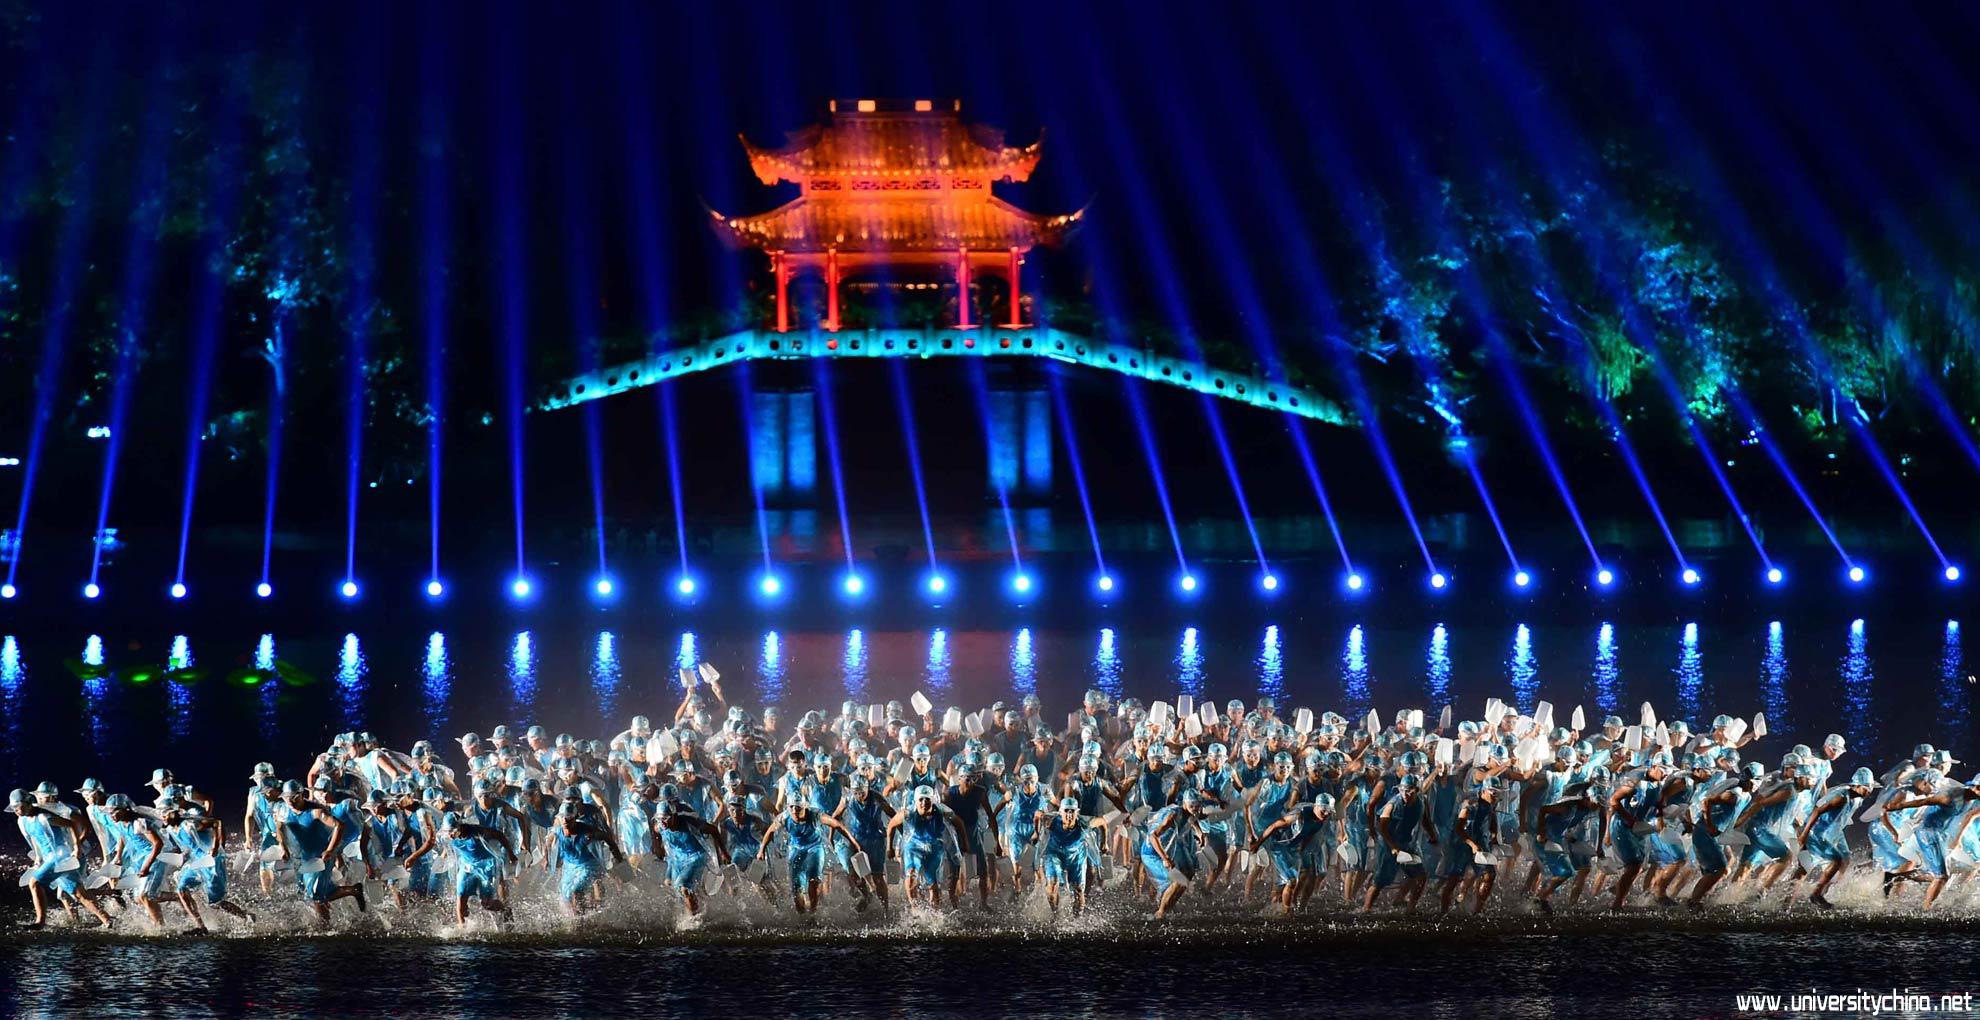 聚焦G20文艺晚会图集 最忆是杭州 欢乐颂